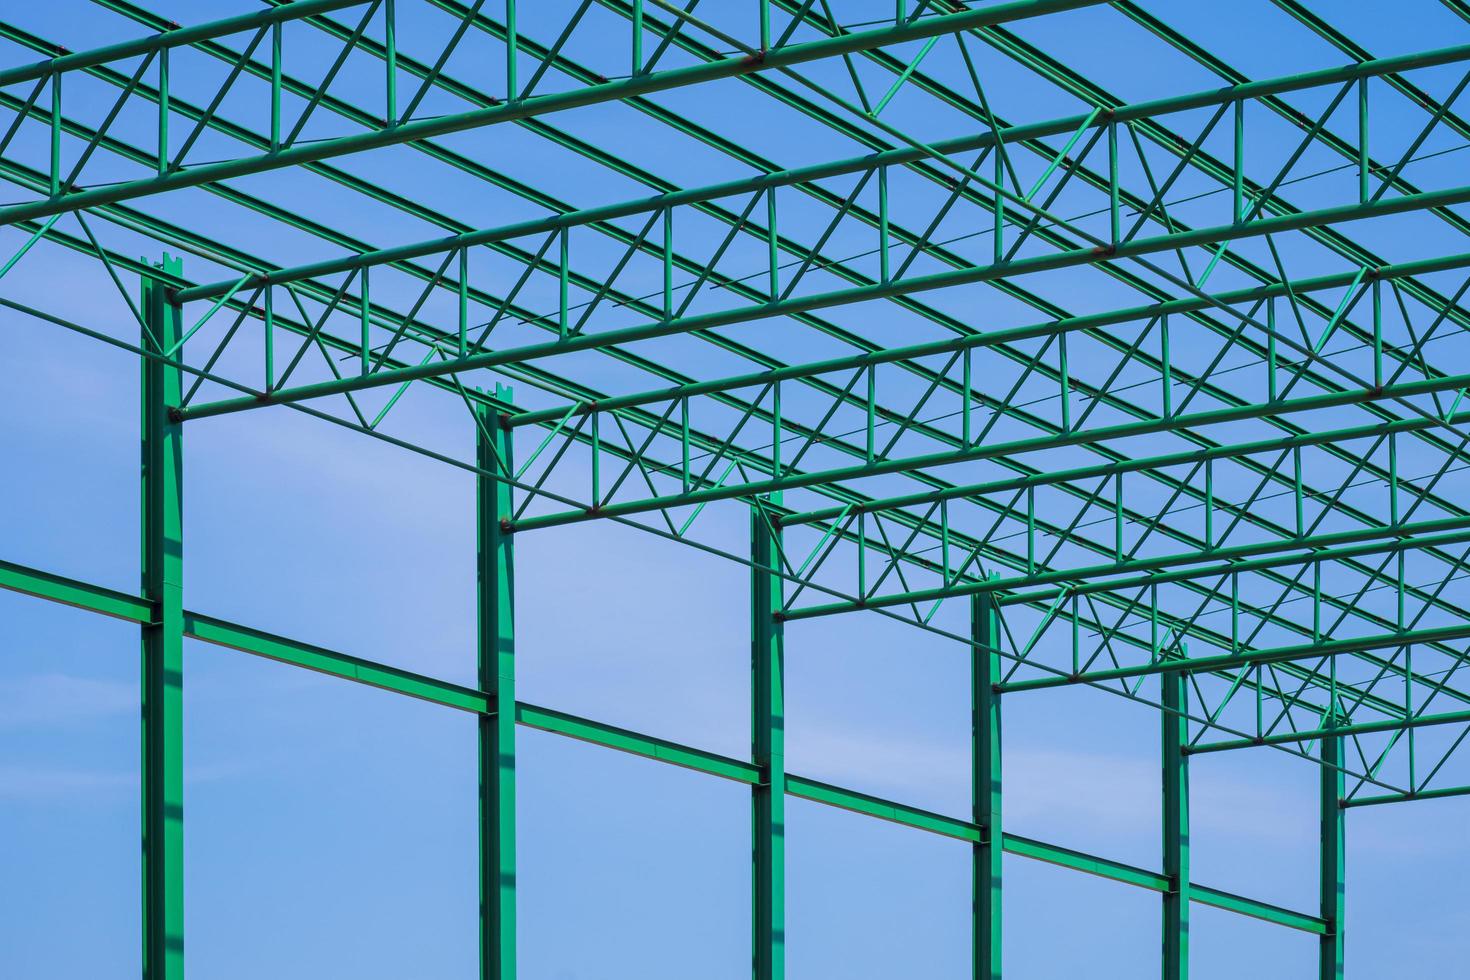 lage hoekmening van groen stalen dak van magazijnbouwstructuur in bouwgebied tegen blauwe hemelachtergrond foto